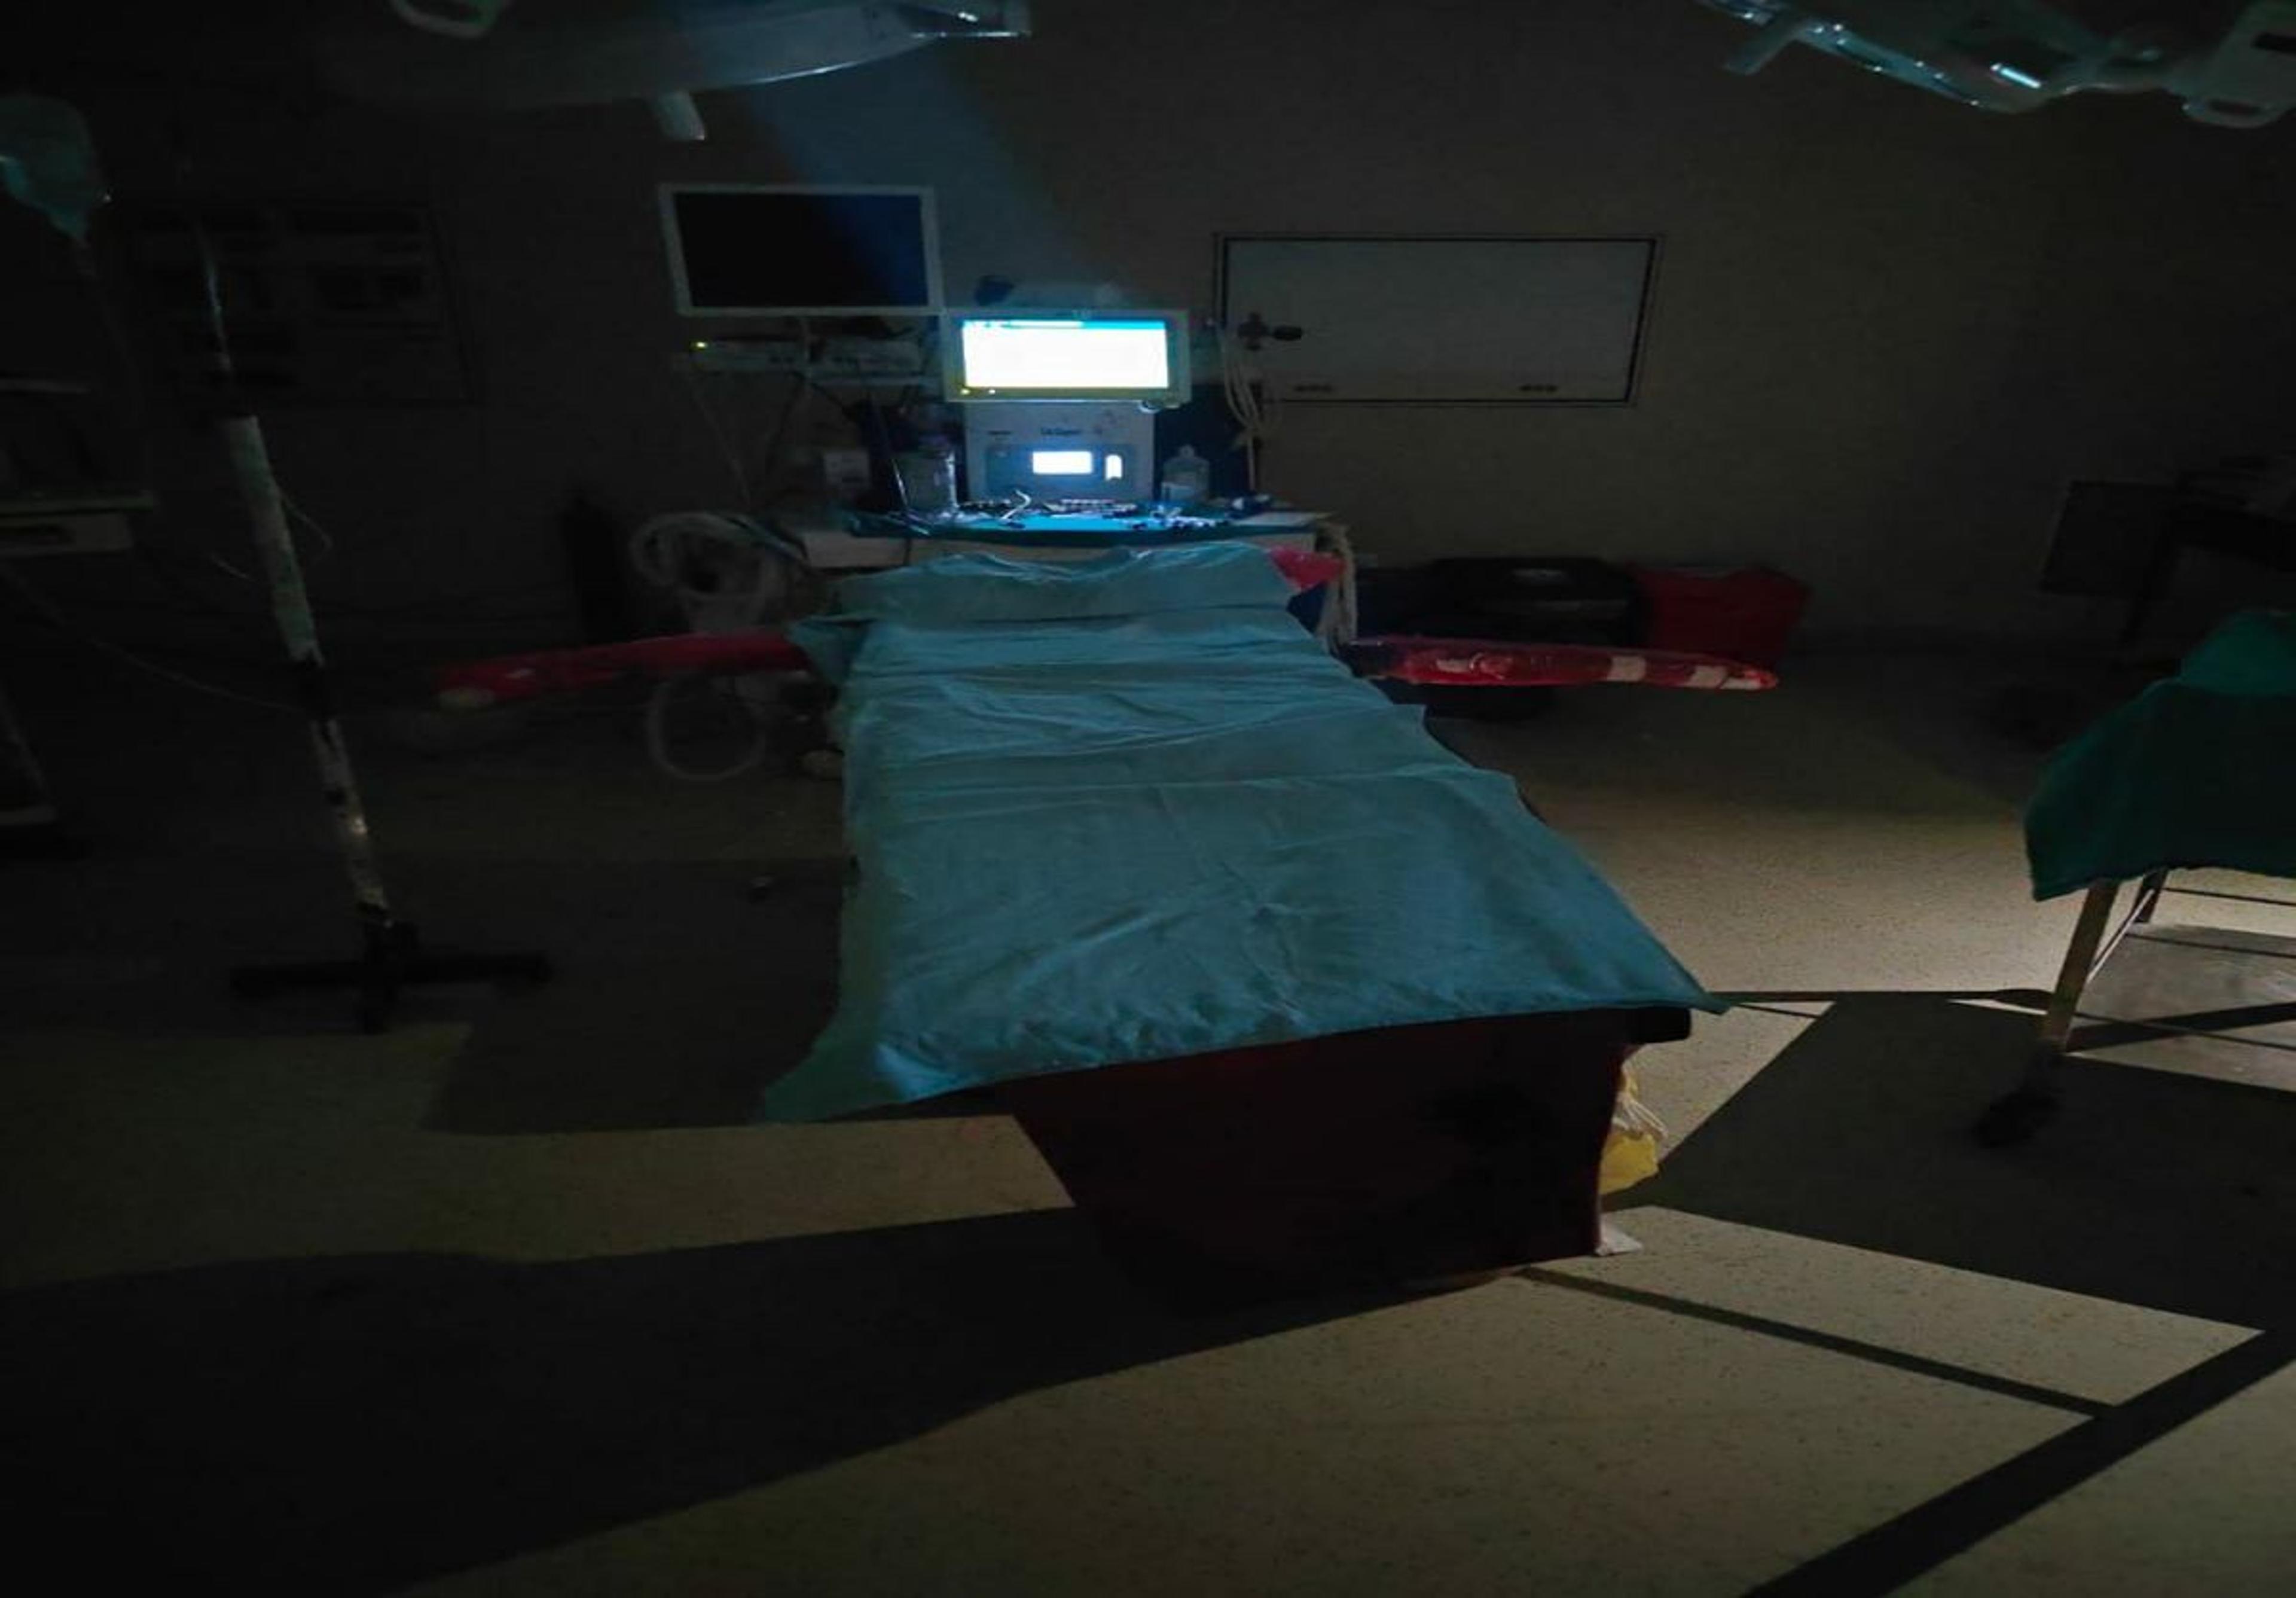 लचर व्यवस्था: मेडिकल कॉलेज में तीन घंटे बंद रही लाइट, ऑपरेशन के लिए इंतजार करते
रहे डॉक्टर